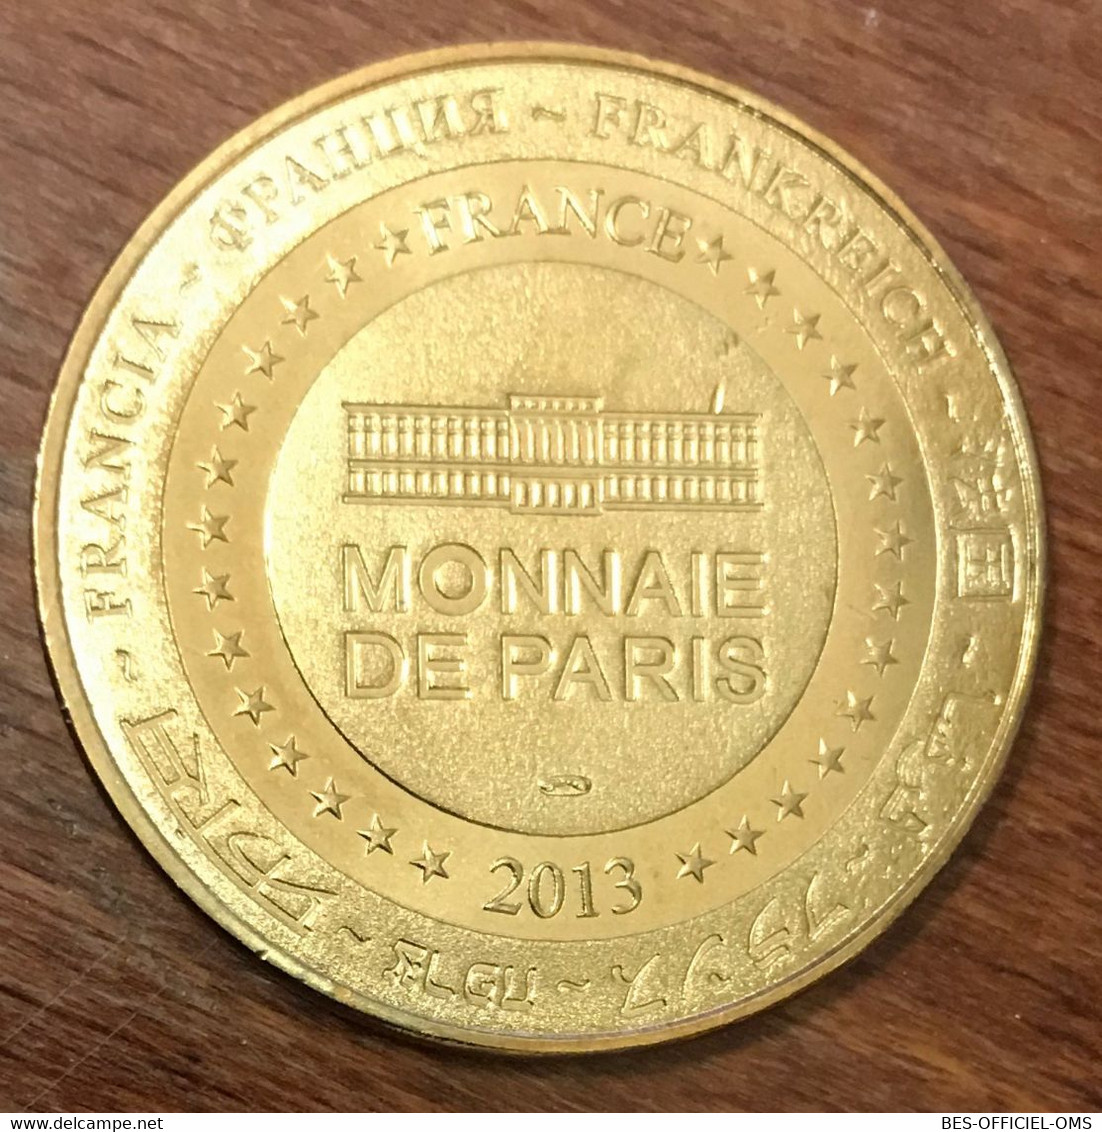 17 ZOO LA PALMYRE LE GORILLE MDP 2013 MÉDAILLE SOUVENIR MONNAIE DE PARIS JETON TOURISTIQUE MEDALS COINS TOKENS - 2013